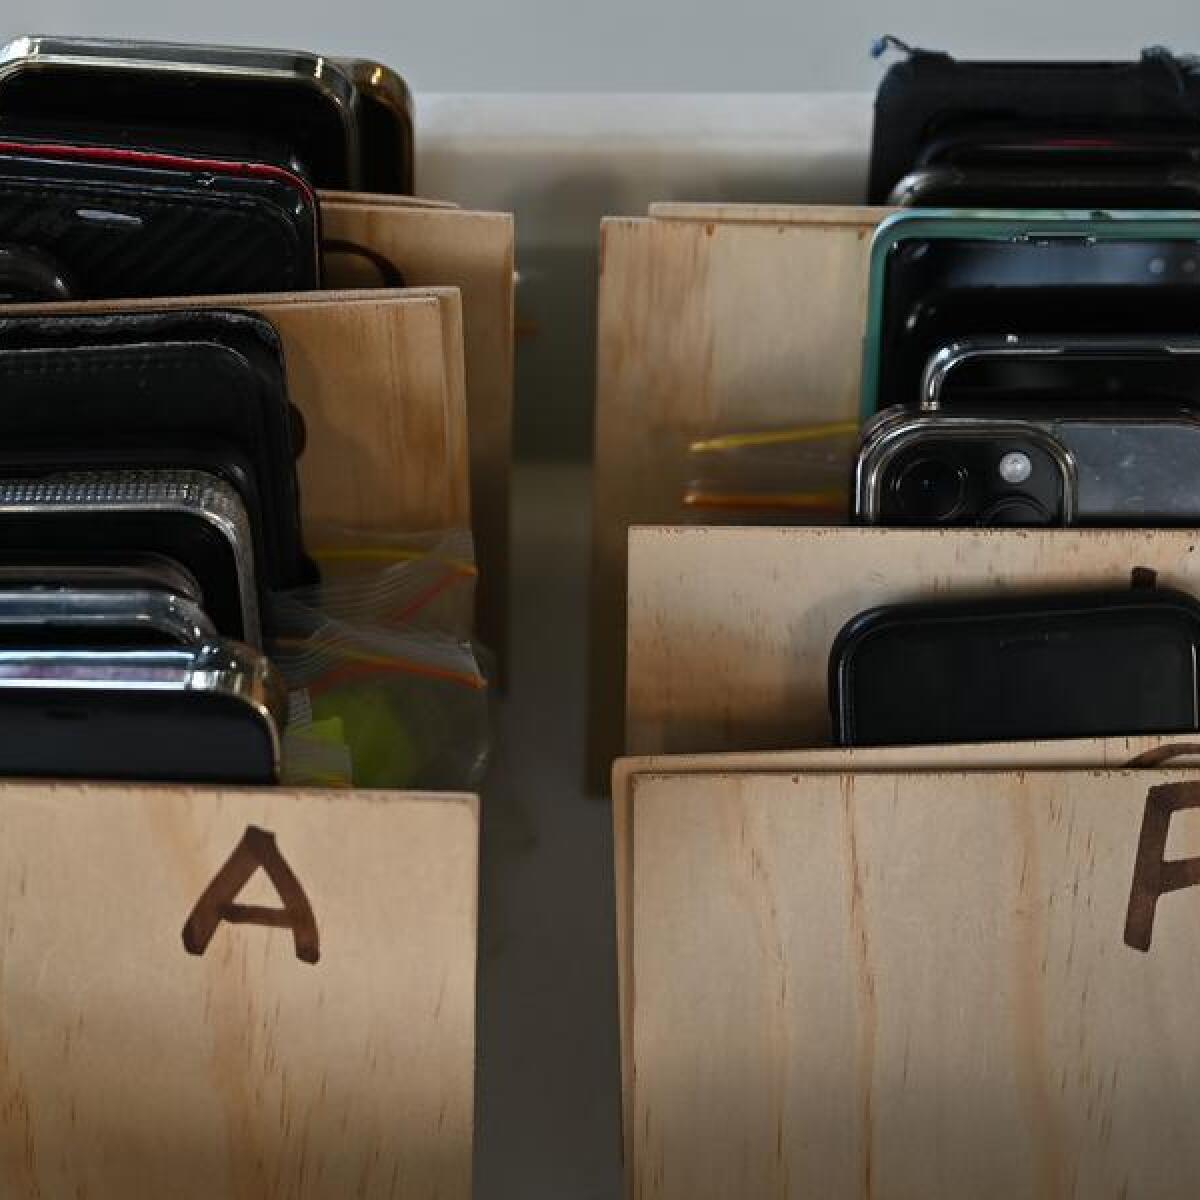 Phones belonging to students